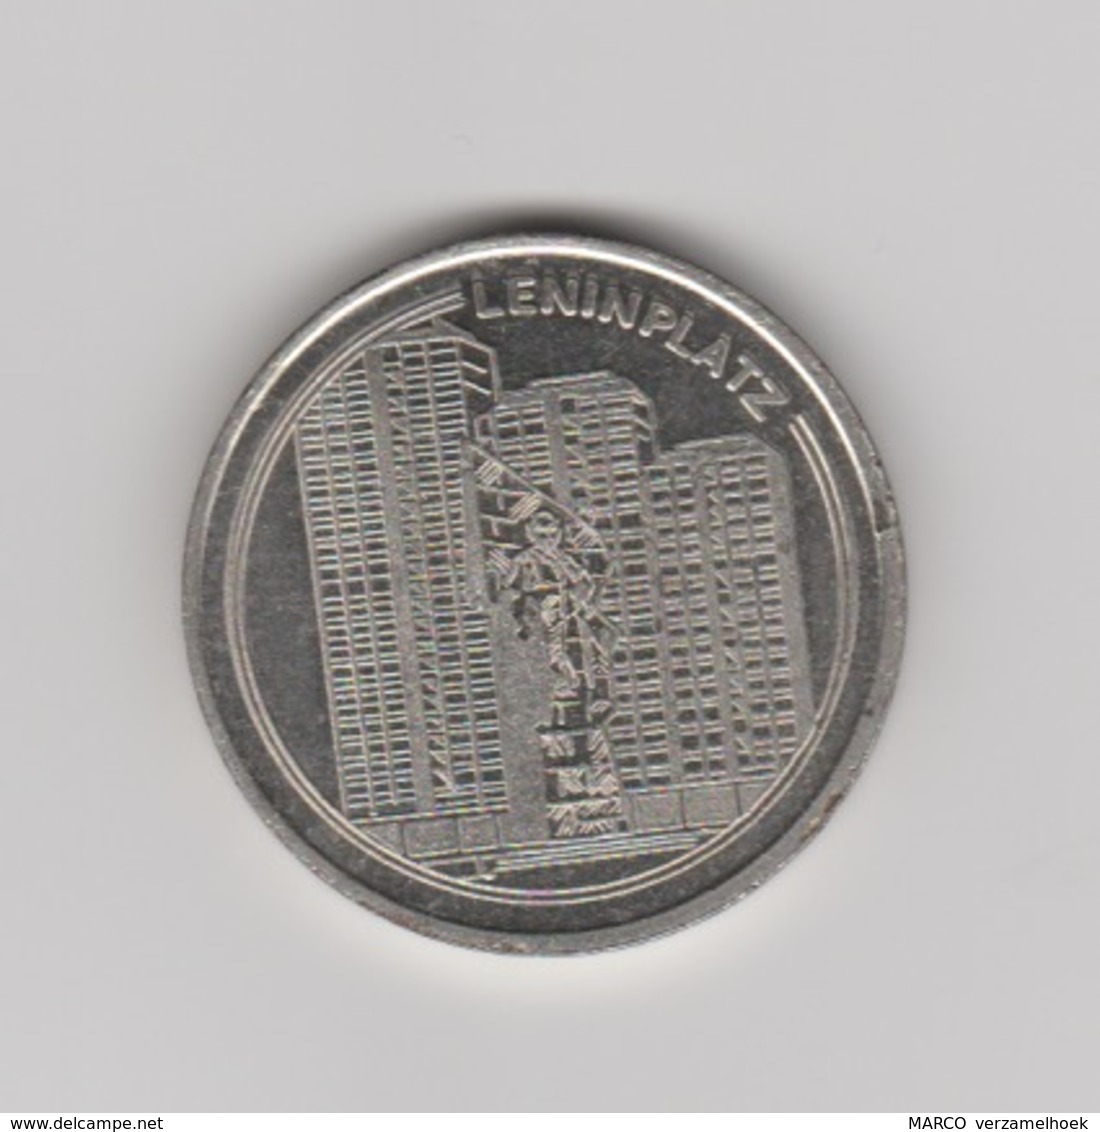 VEB Wohnungsbaukombinat "fritz Heckert" Berlin-berlijn (D) 1949-1989 Leninplatz - Monedas Elongadas (elongated Coins)